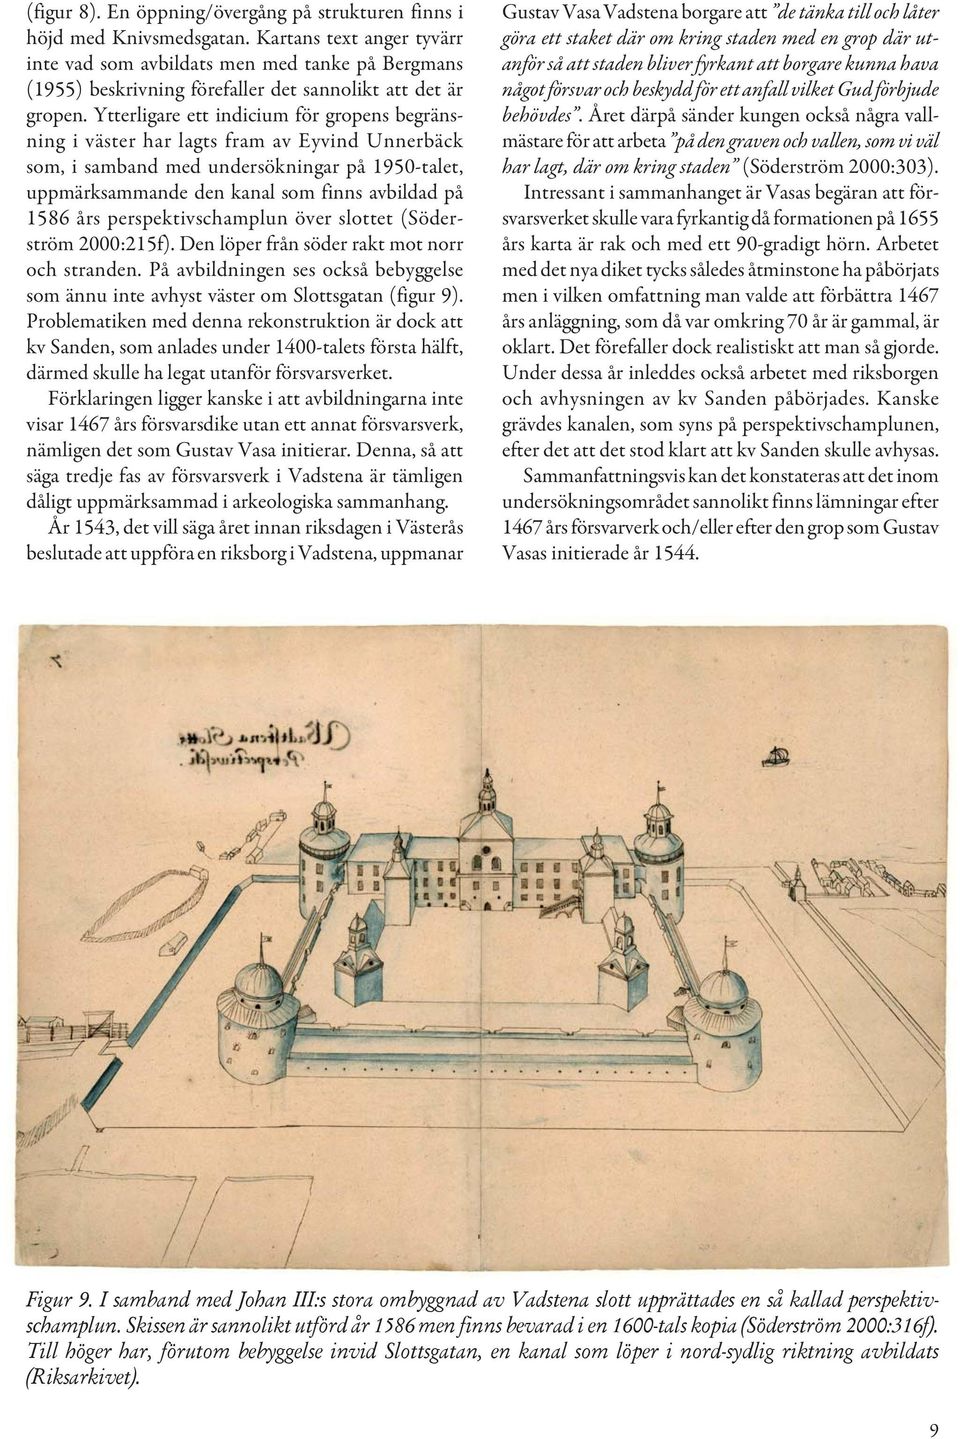 Ytterligare ett indicium för gropens begränsning i väster har lagts fram av Eyvind Unnerbäck som, i samband med undersökningar på 1950-talet, uppmärksammande den kanal som finns avbildad på 1586 års